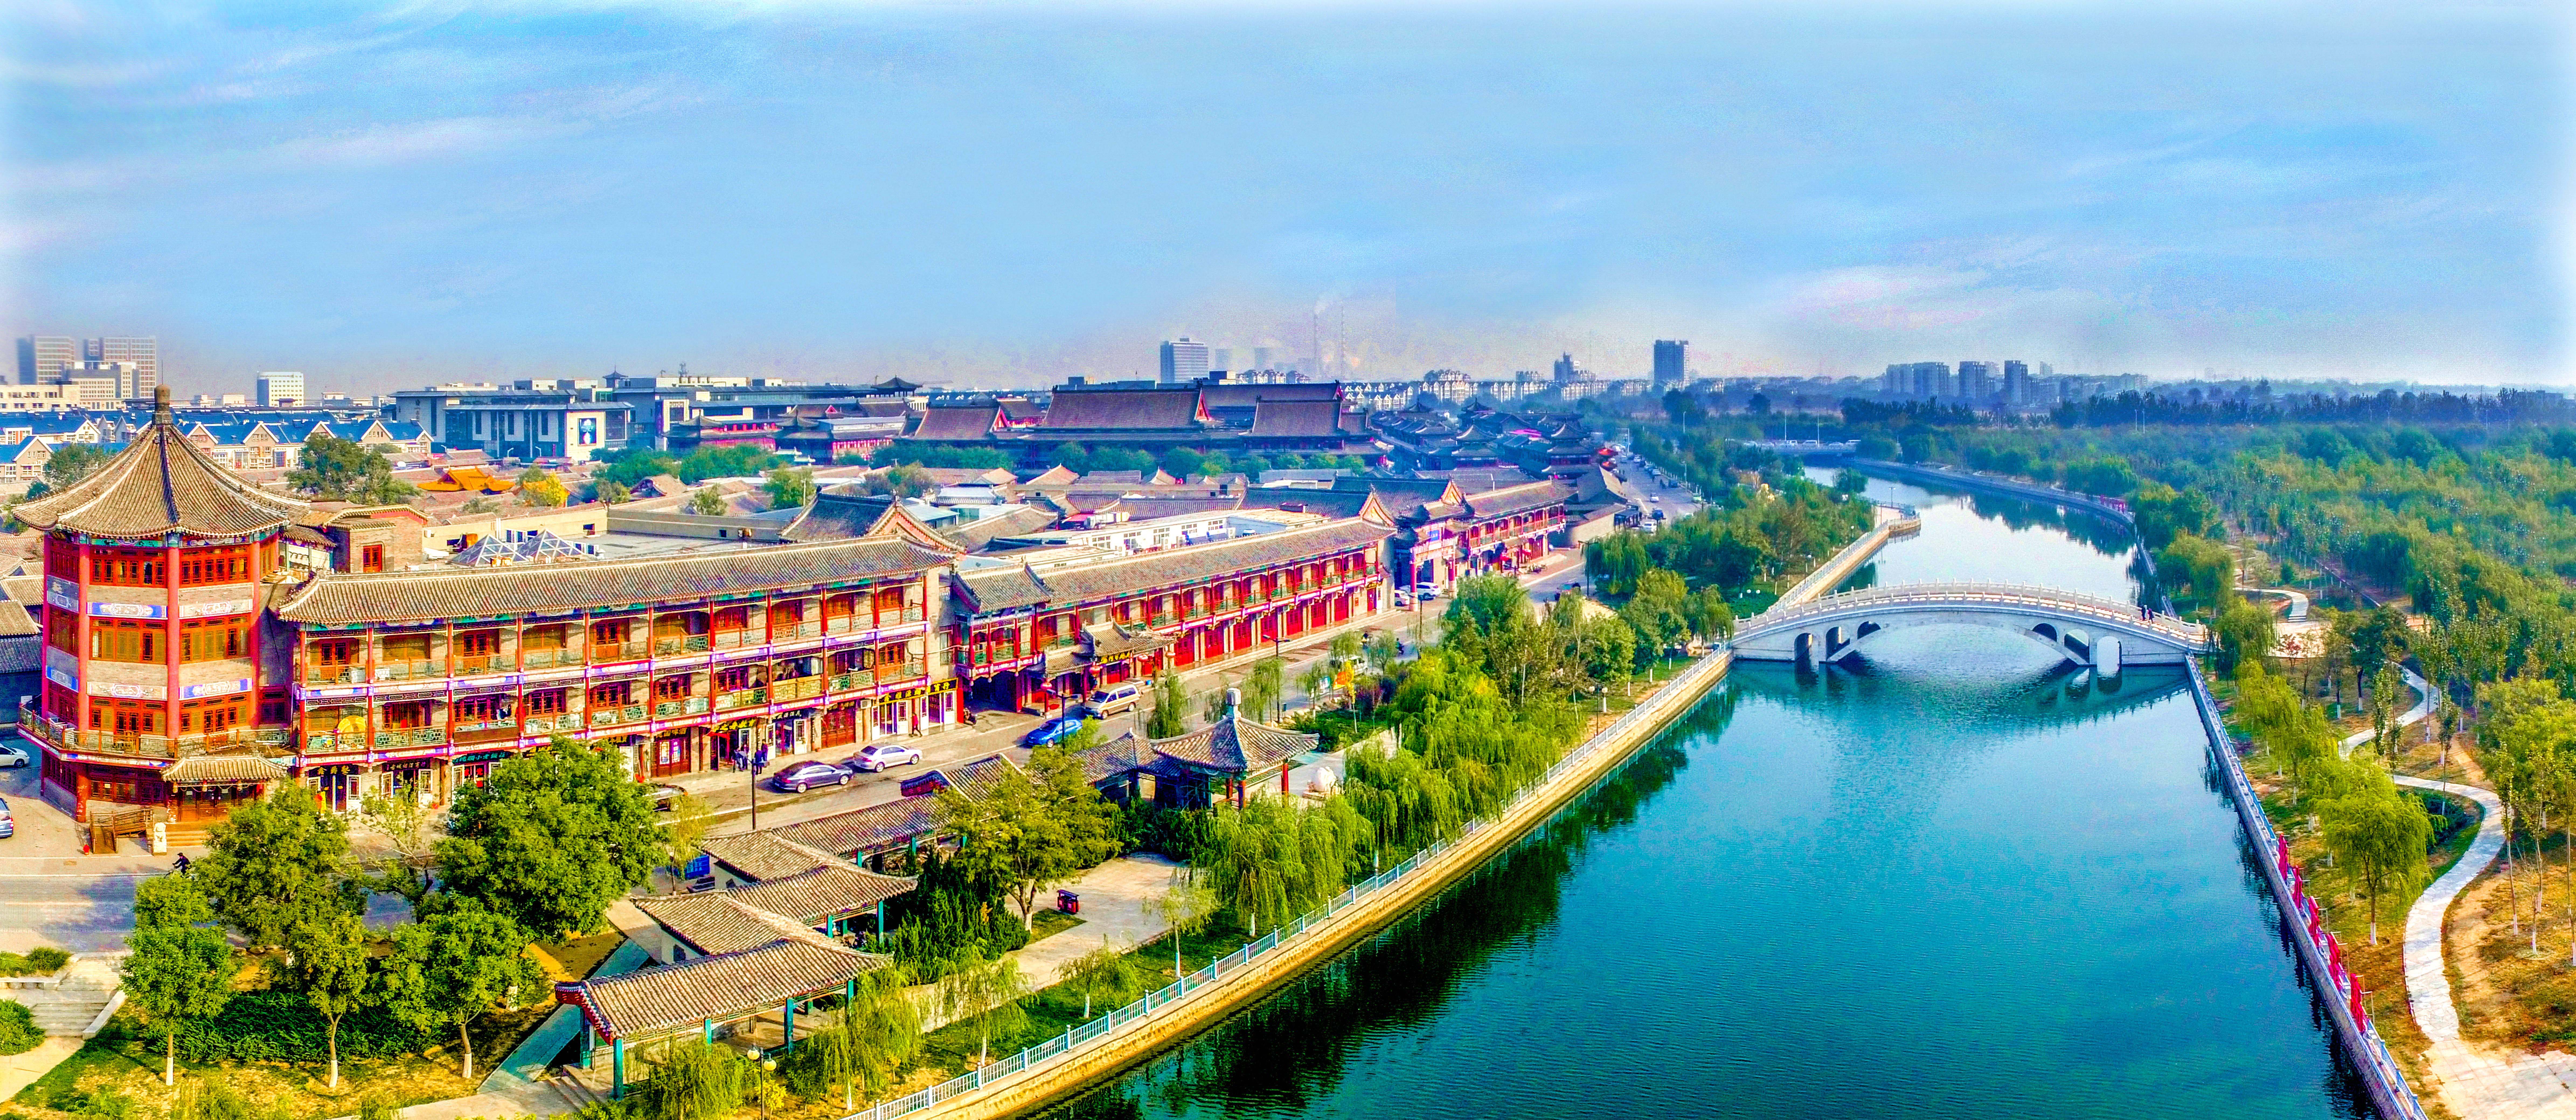 六中全会精神在基层因河而生因河而盛天津传承千年大运河文化再续辉煌